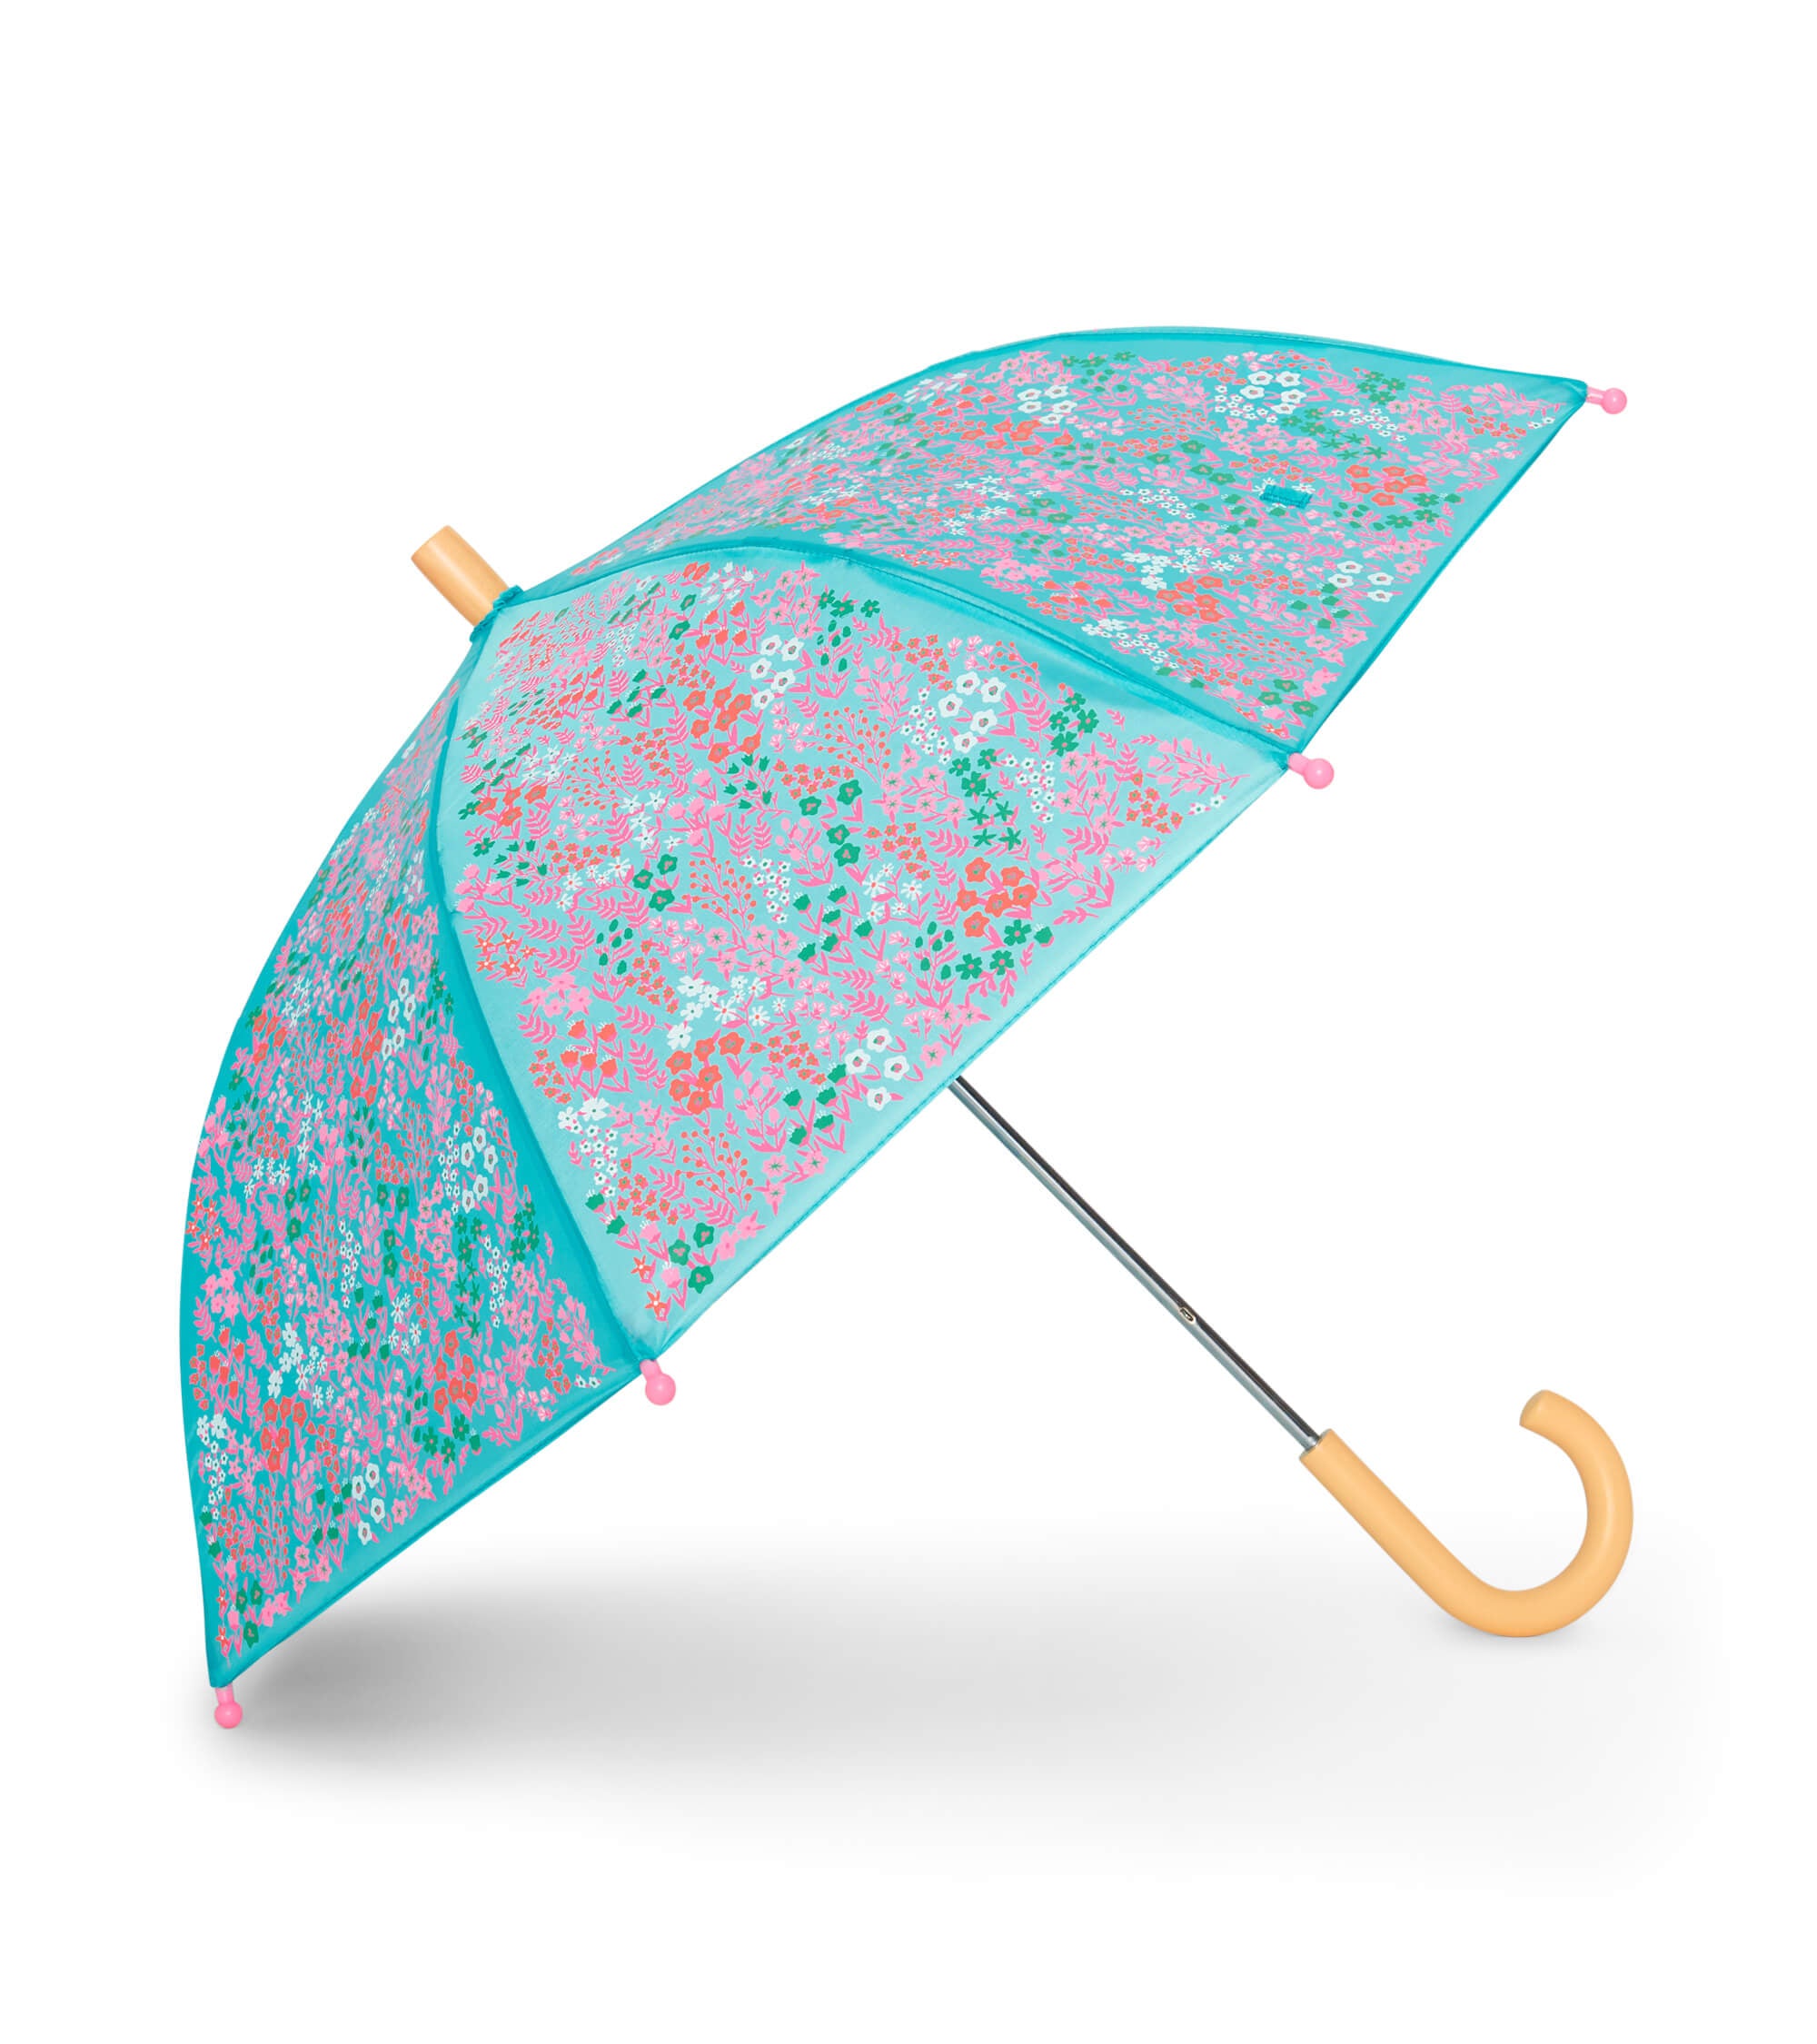 Ditsy Floral Umbrella